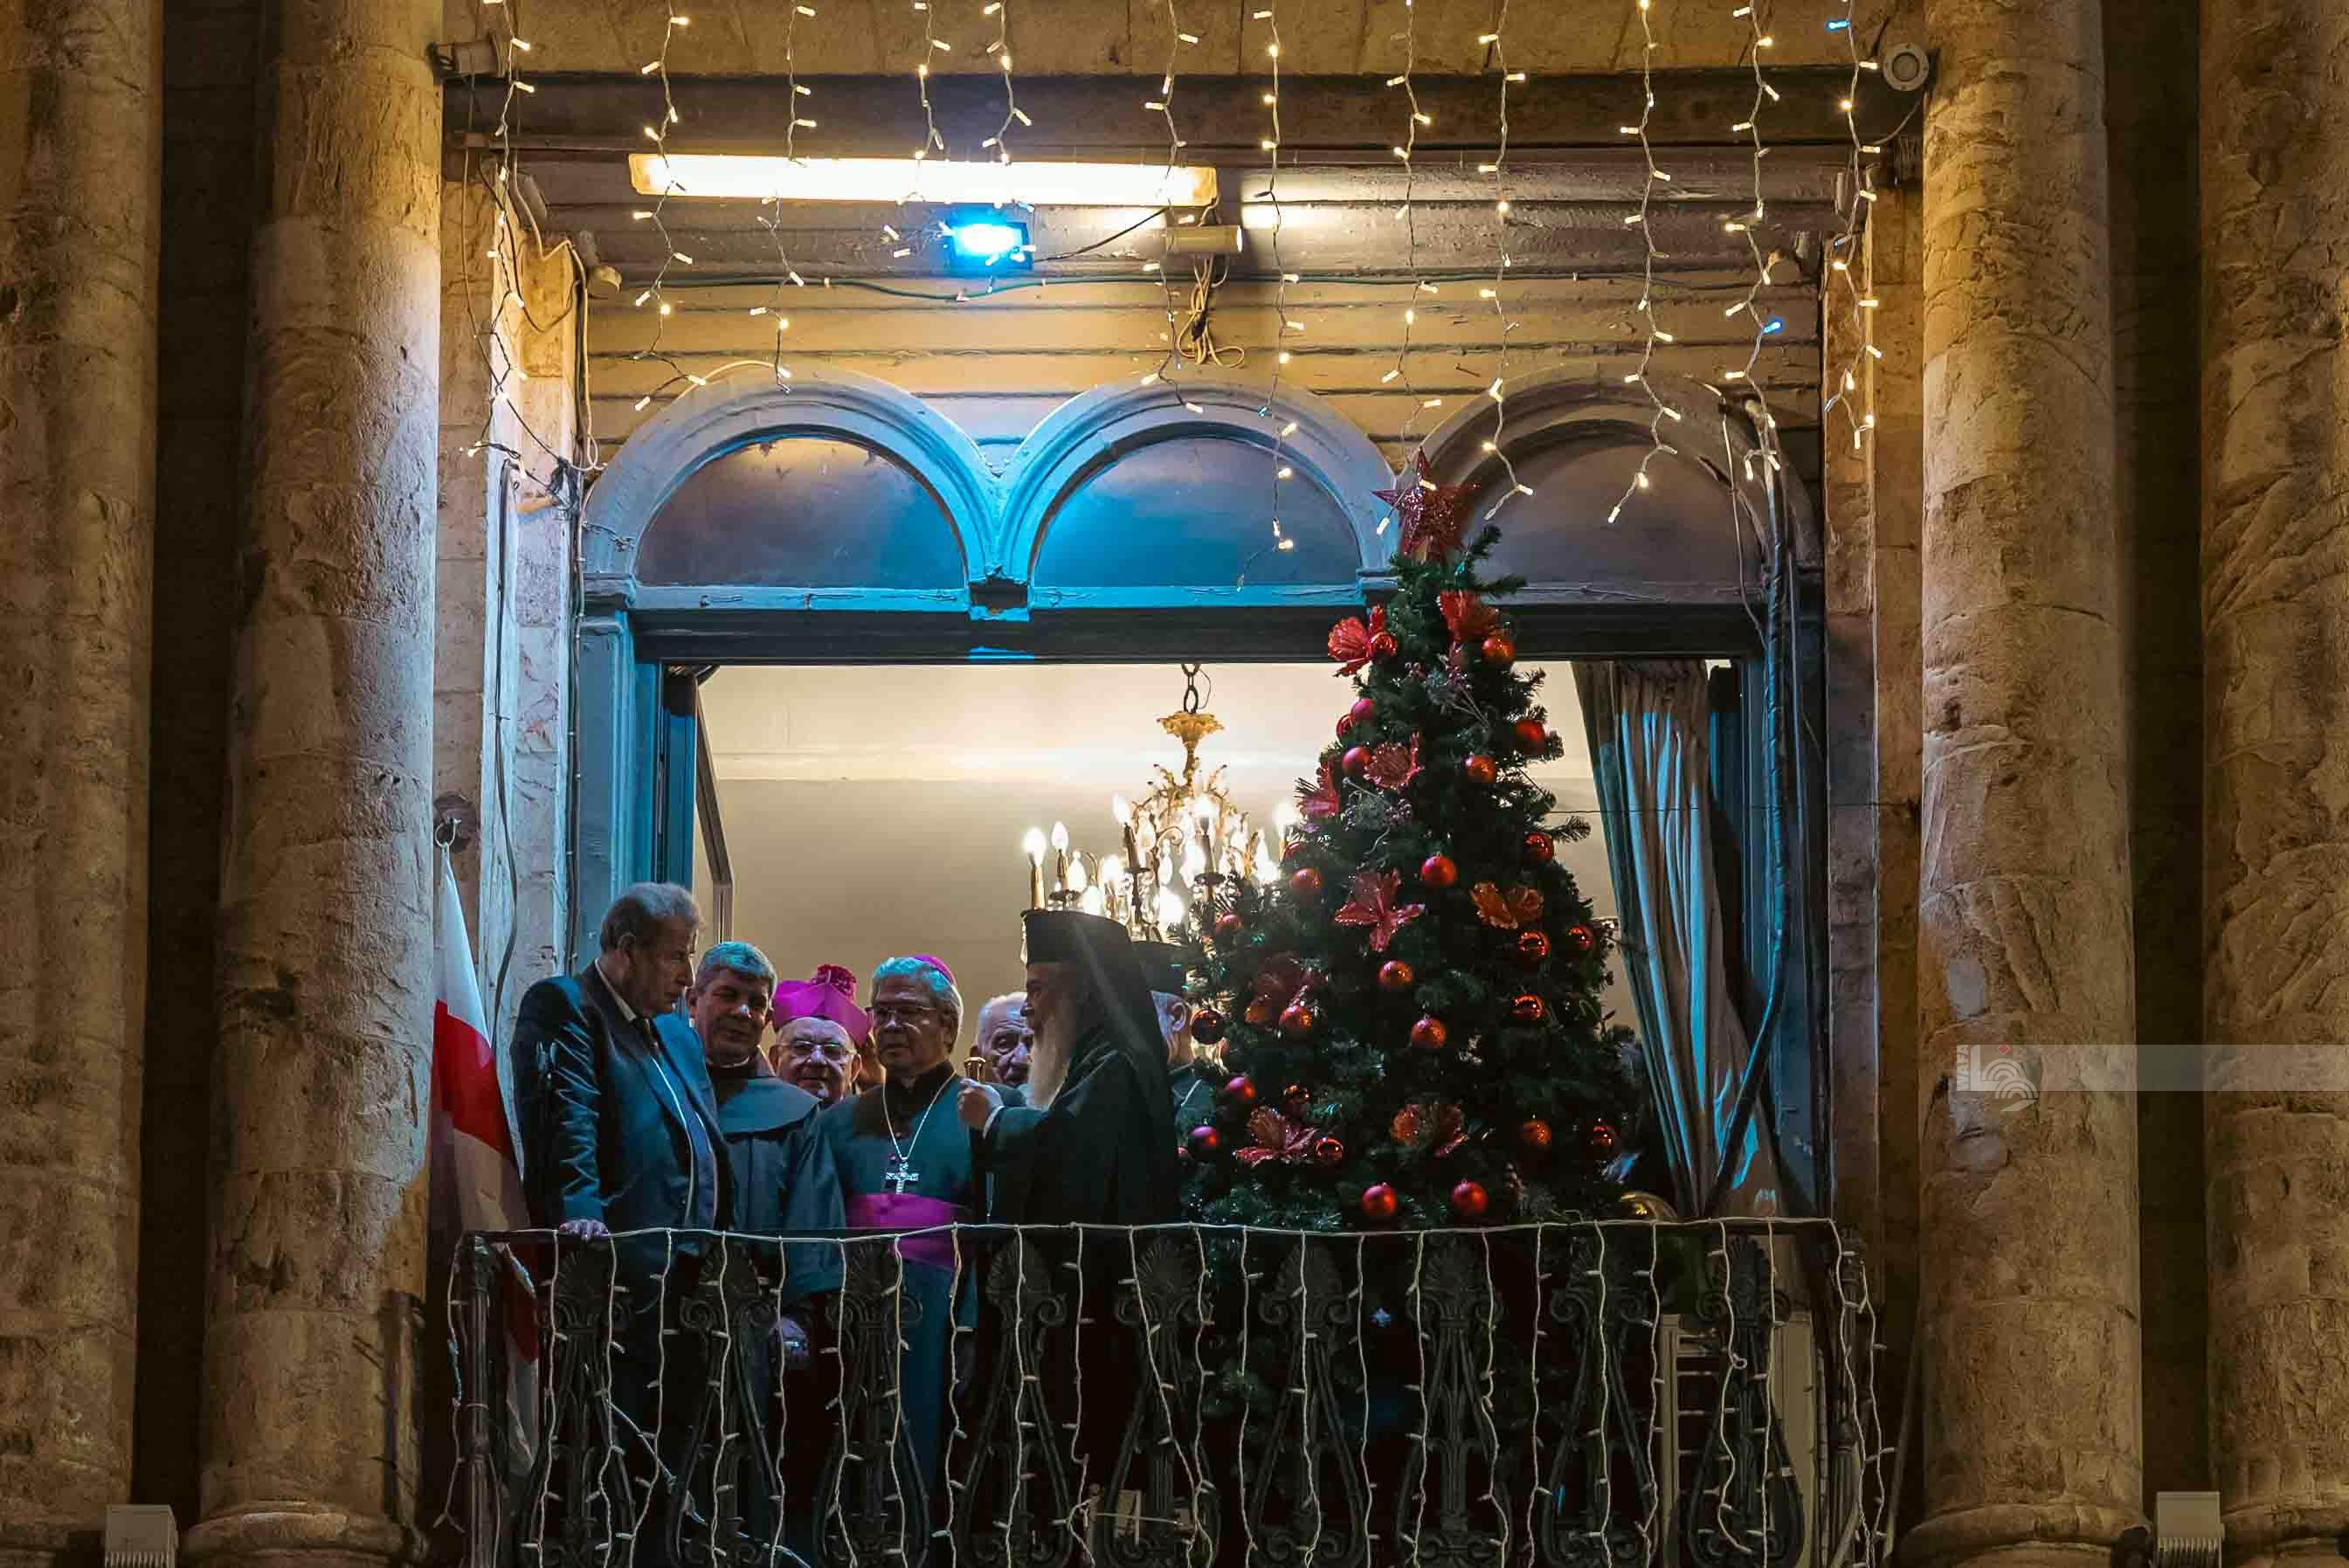 اضاءة شجرة الميلاد في فندق الامبيريال في باب الخليل المهدد بالاخلاء لصالح جمعيات استيطانية.jpg